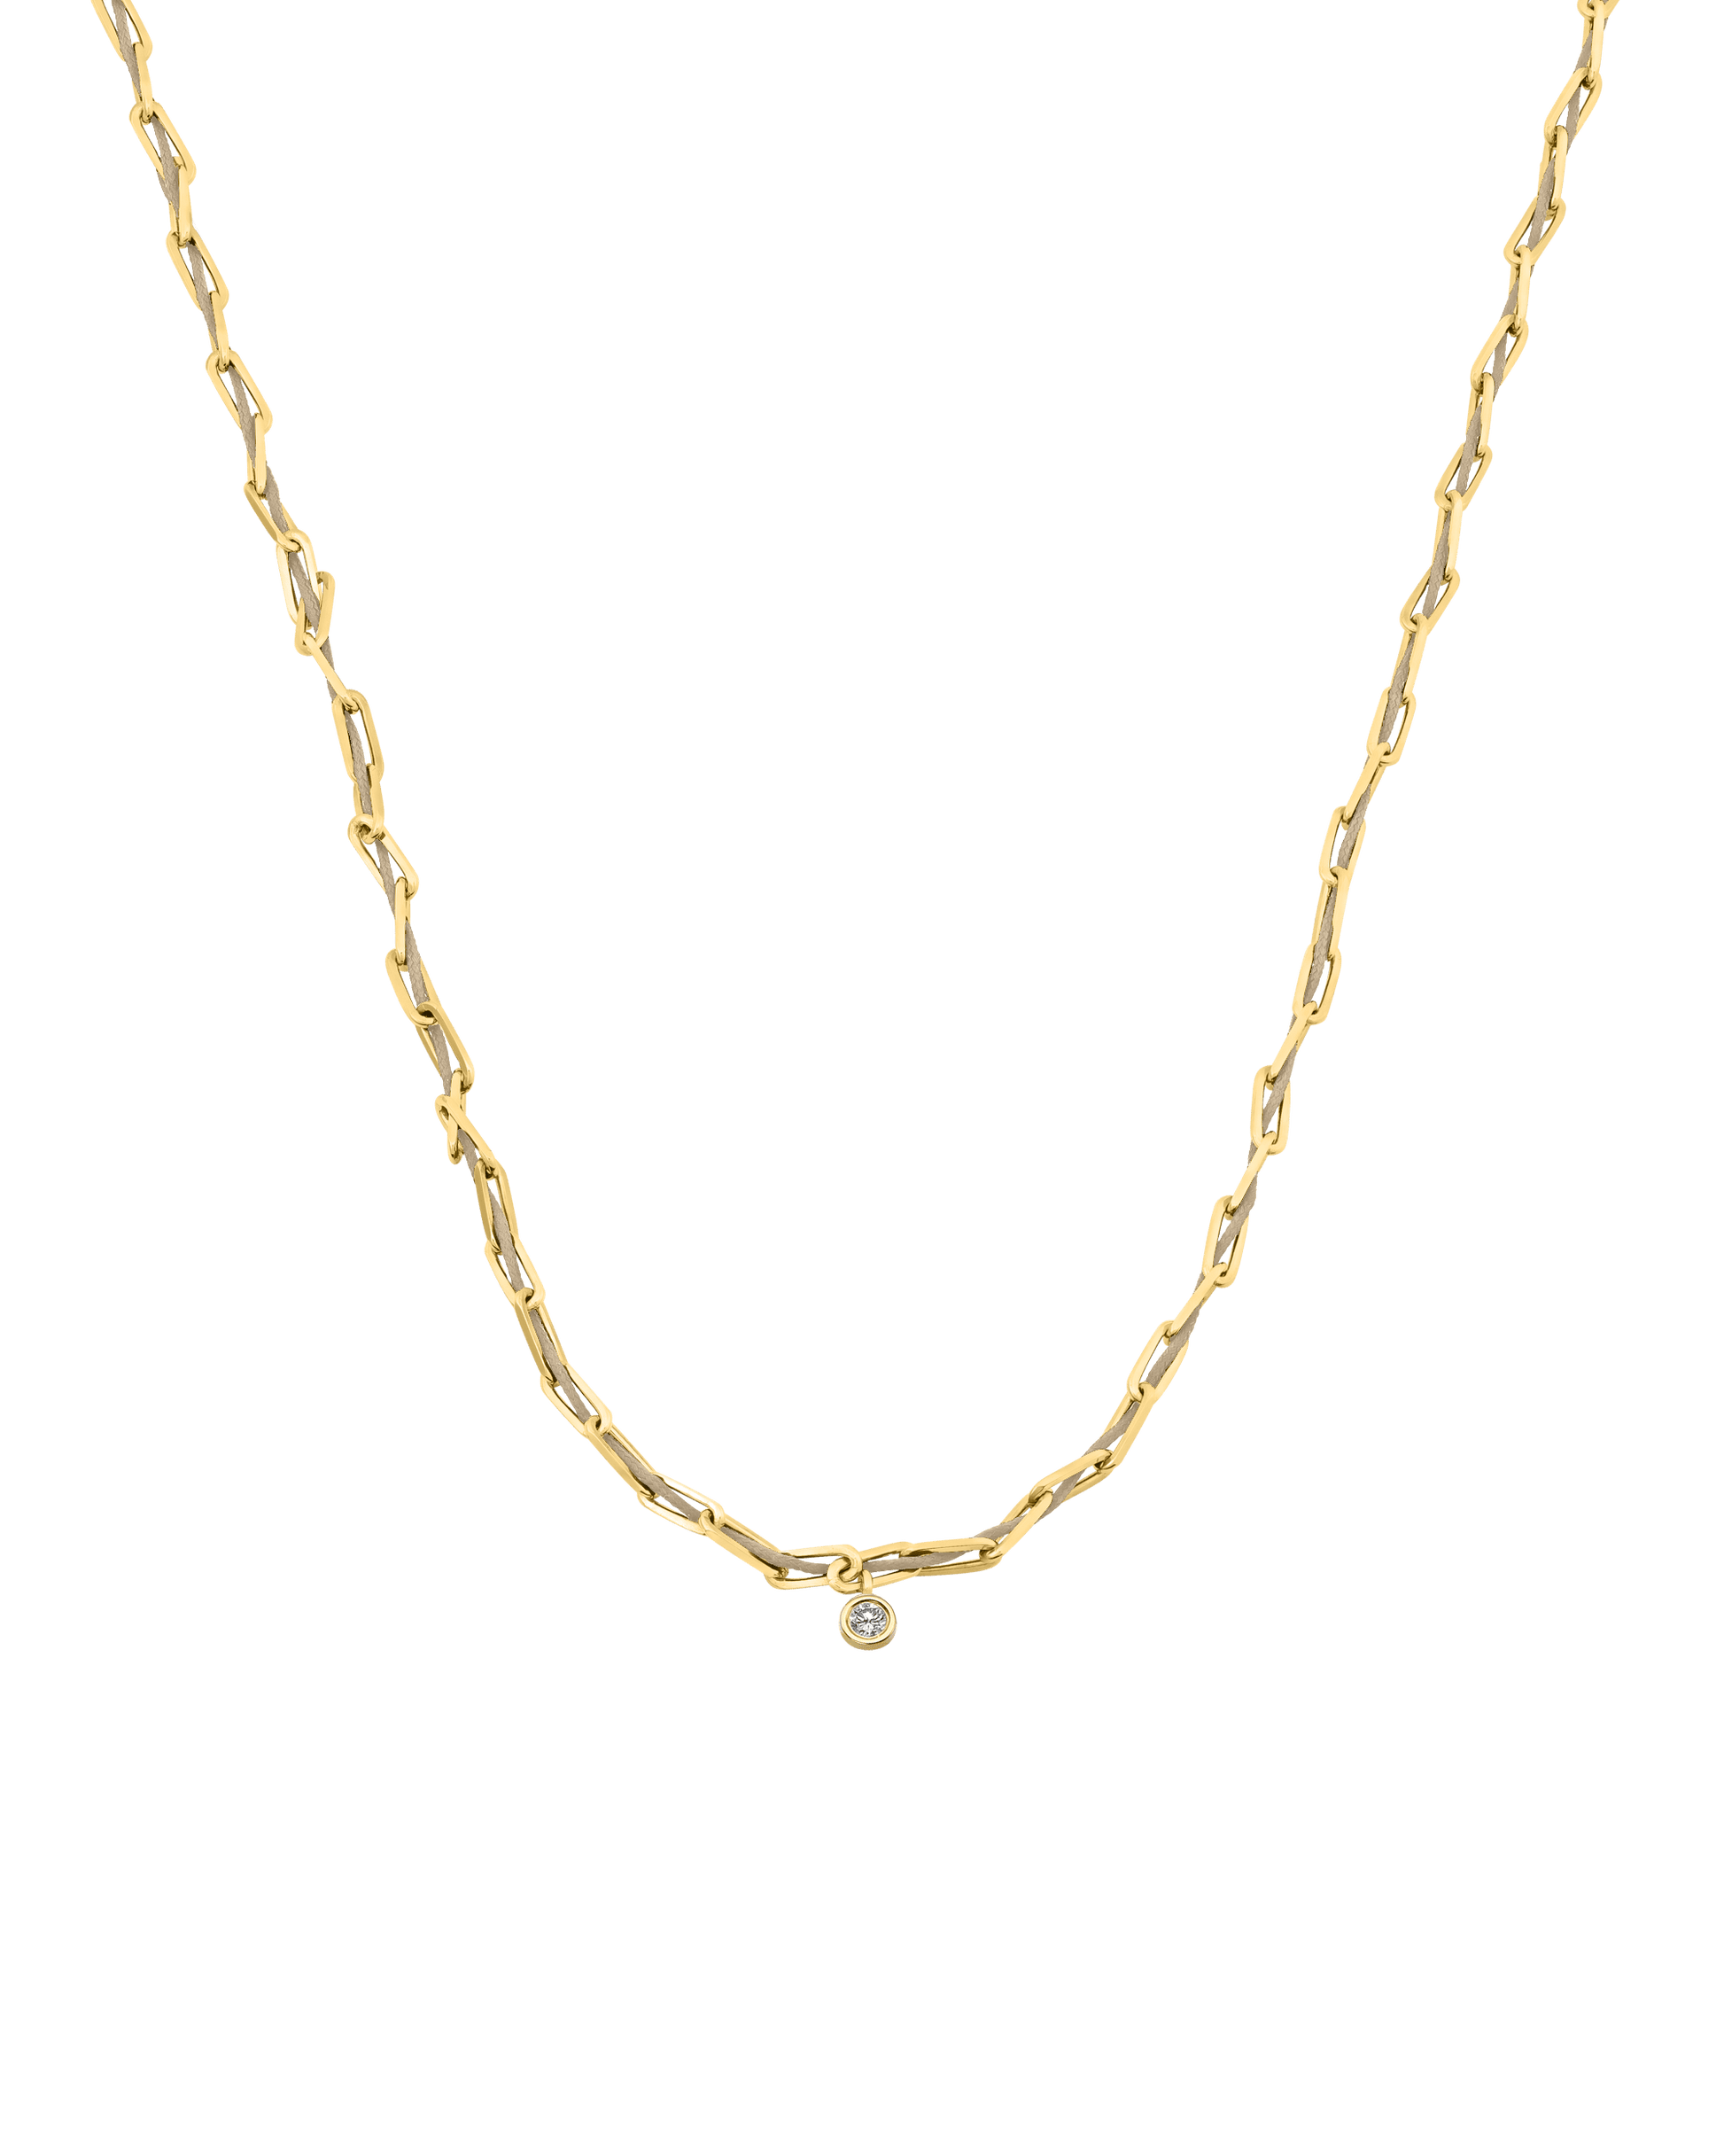 Twine Diamond Necklace - 18K Gold Vermeil Necklaces magal-dev Sand Large: 0.10ct 16"